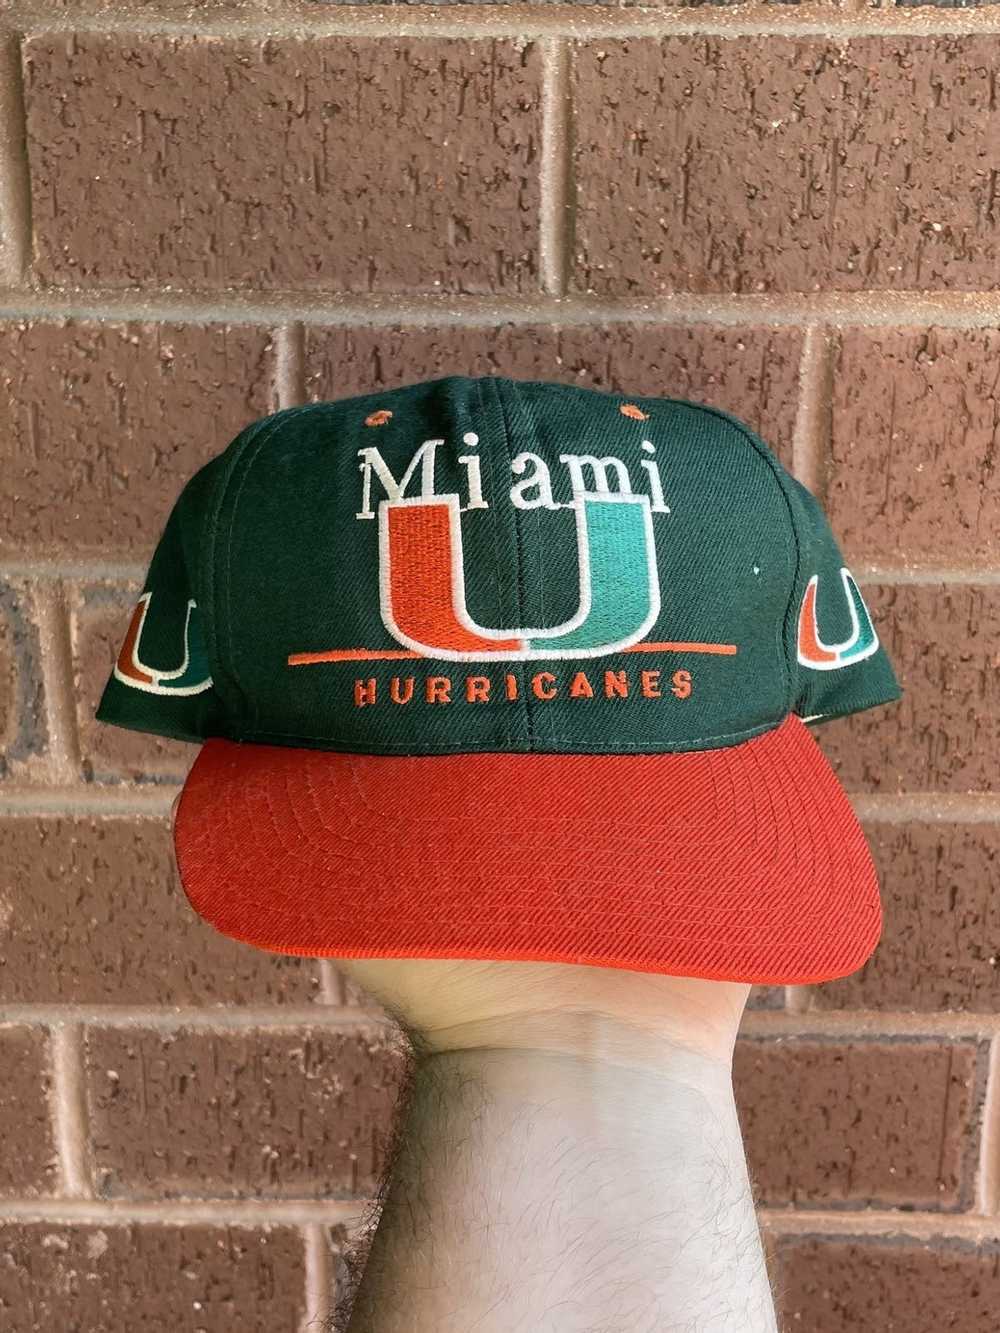 Twins Enterprise, Accessories, Anaheim Mighty Ducks Nhl Twins Enterprise  Inc Vintage Hat Strapback Cap Mens